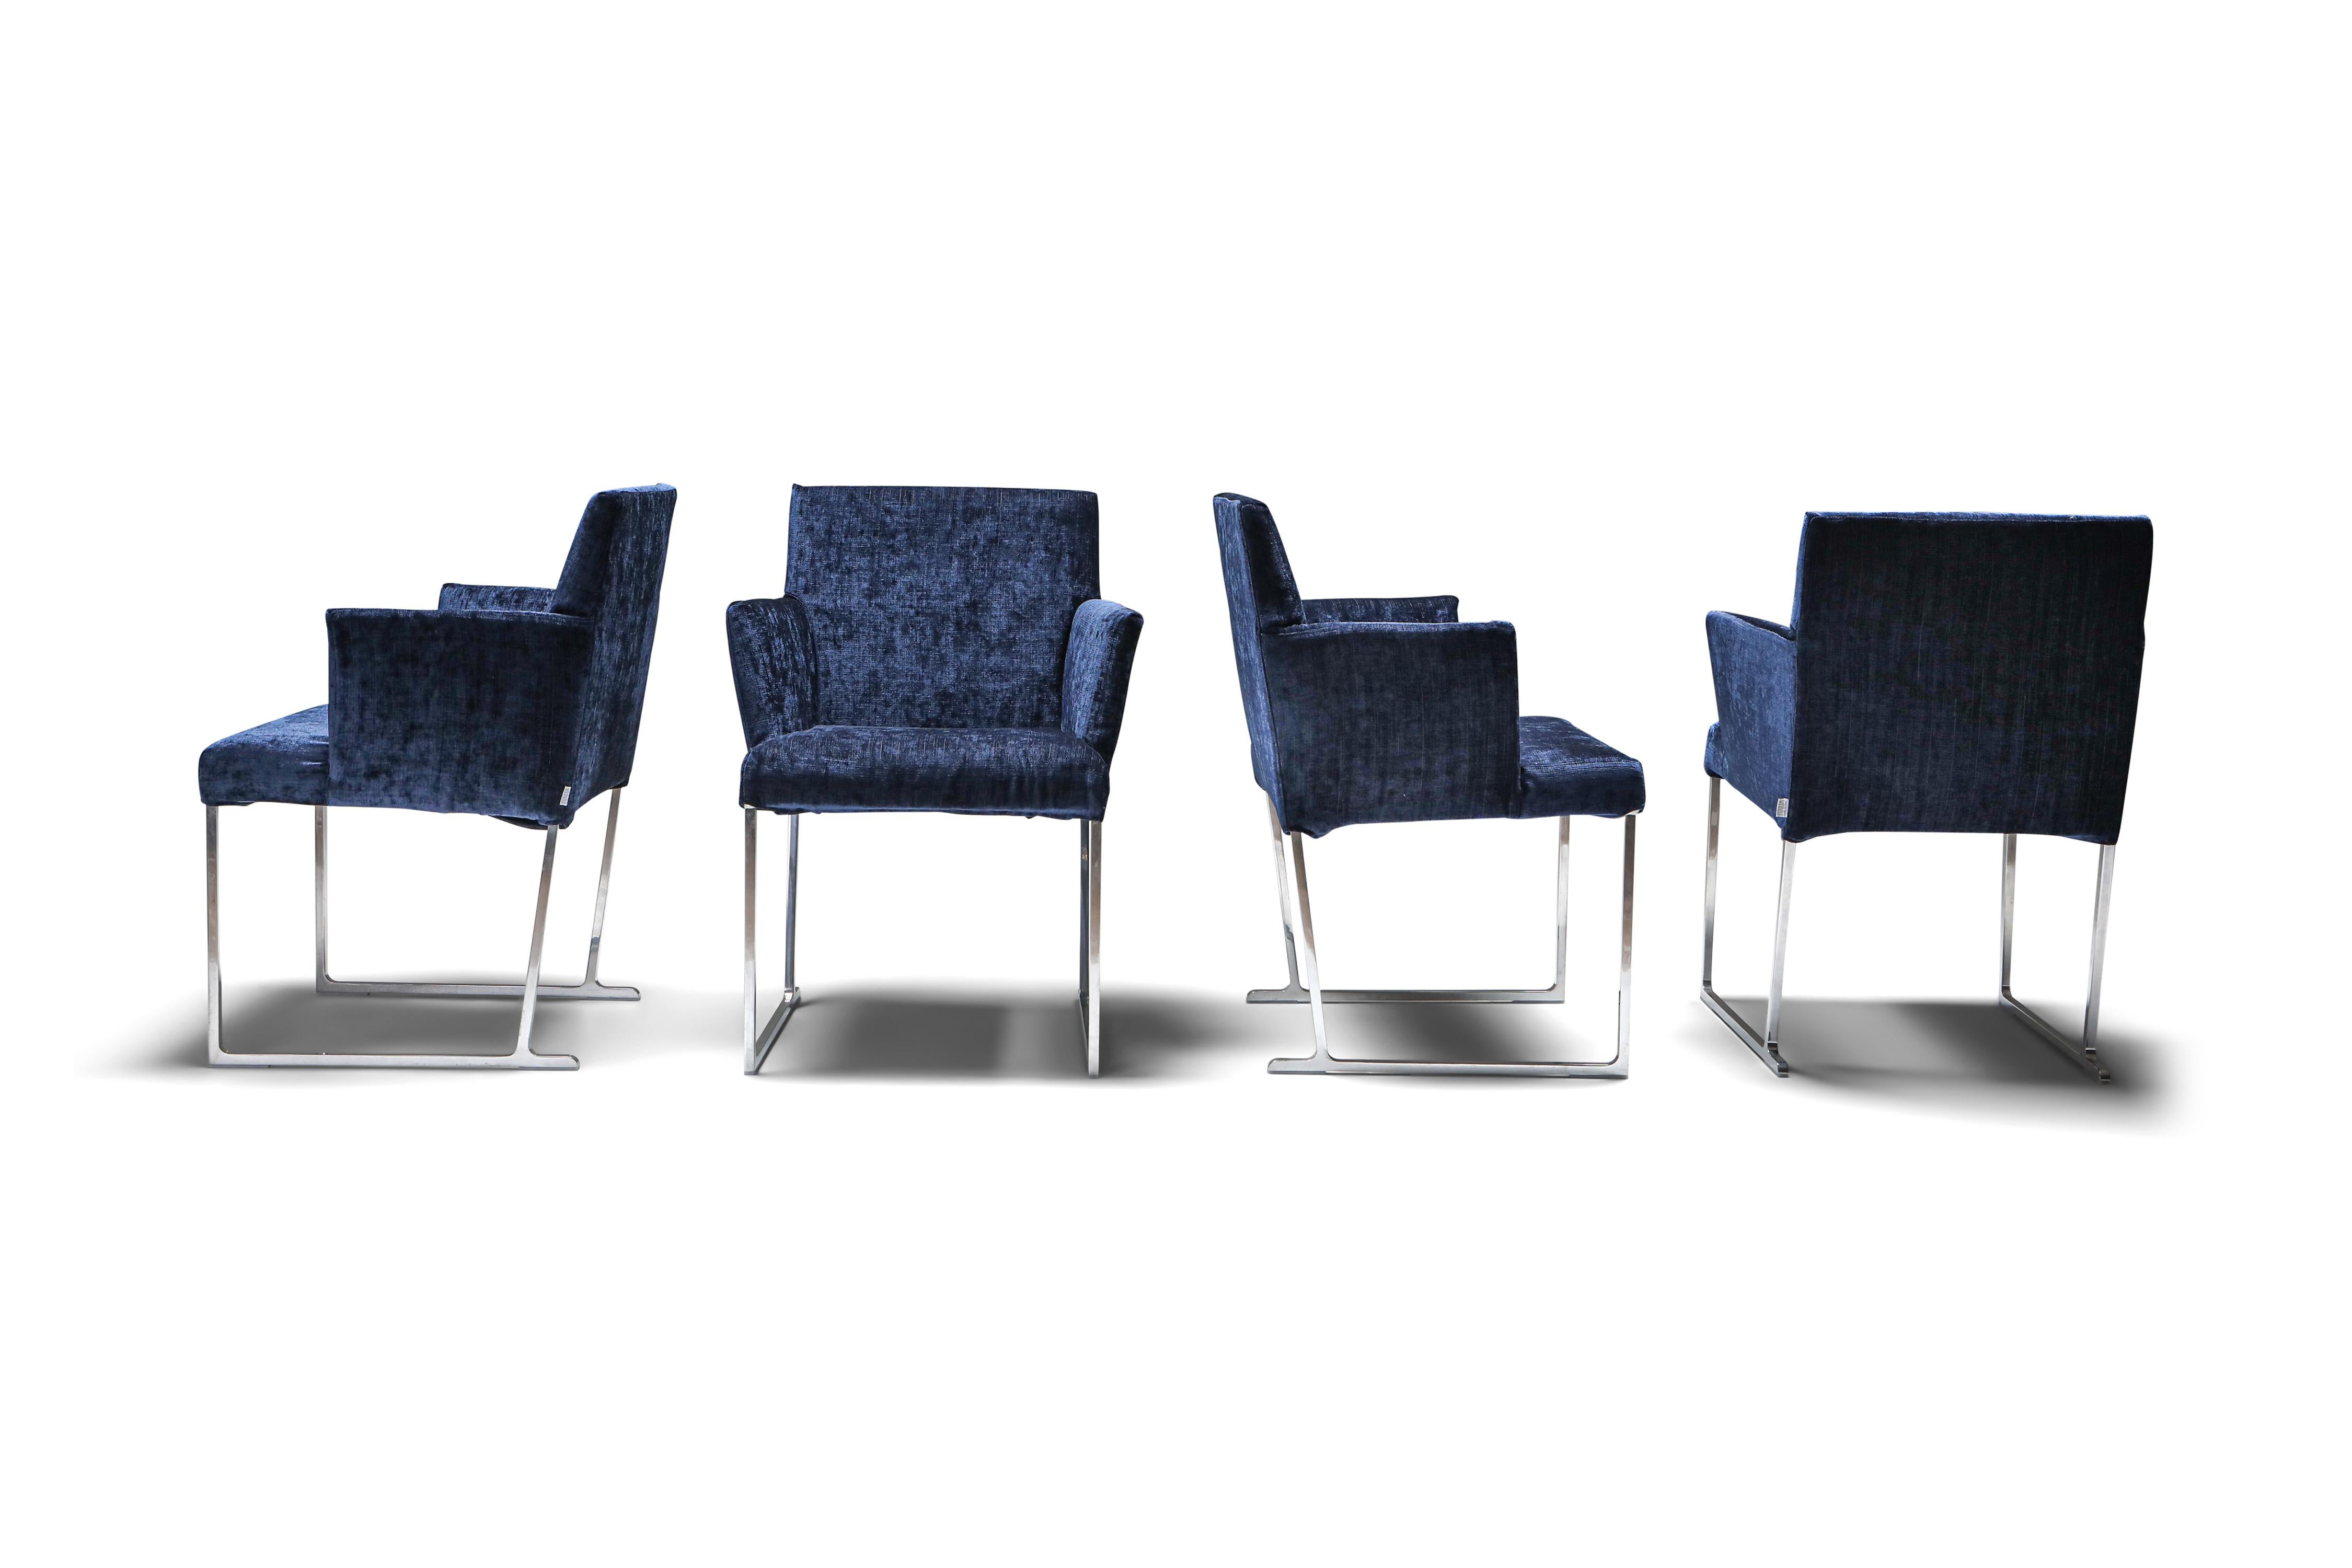 Solo-Sessel von Antonio Citterio aus luxuriösem dunkelblauem Samt für B&B Italia. Diese makellosen Sessel der geschätzten Marke B&B Italia definieren mit ihren besonderen Merkmalen das Konzept des modernen Sitzens neu. Sie zeichnen sich durch eine